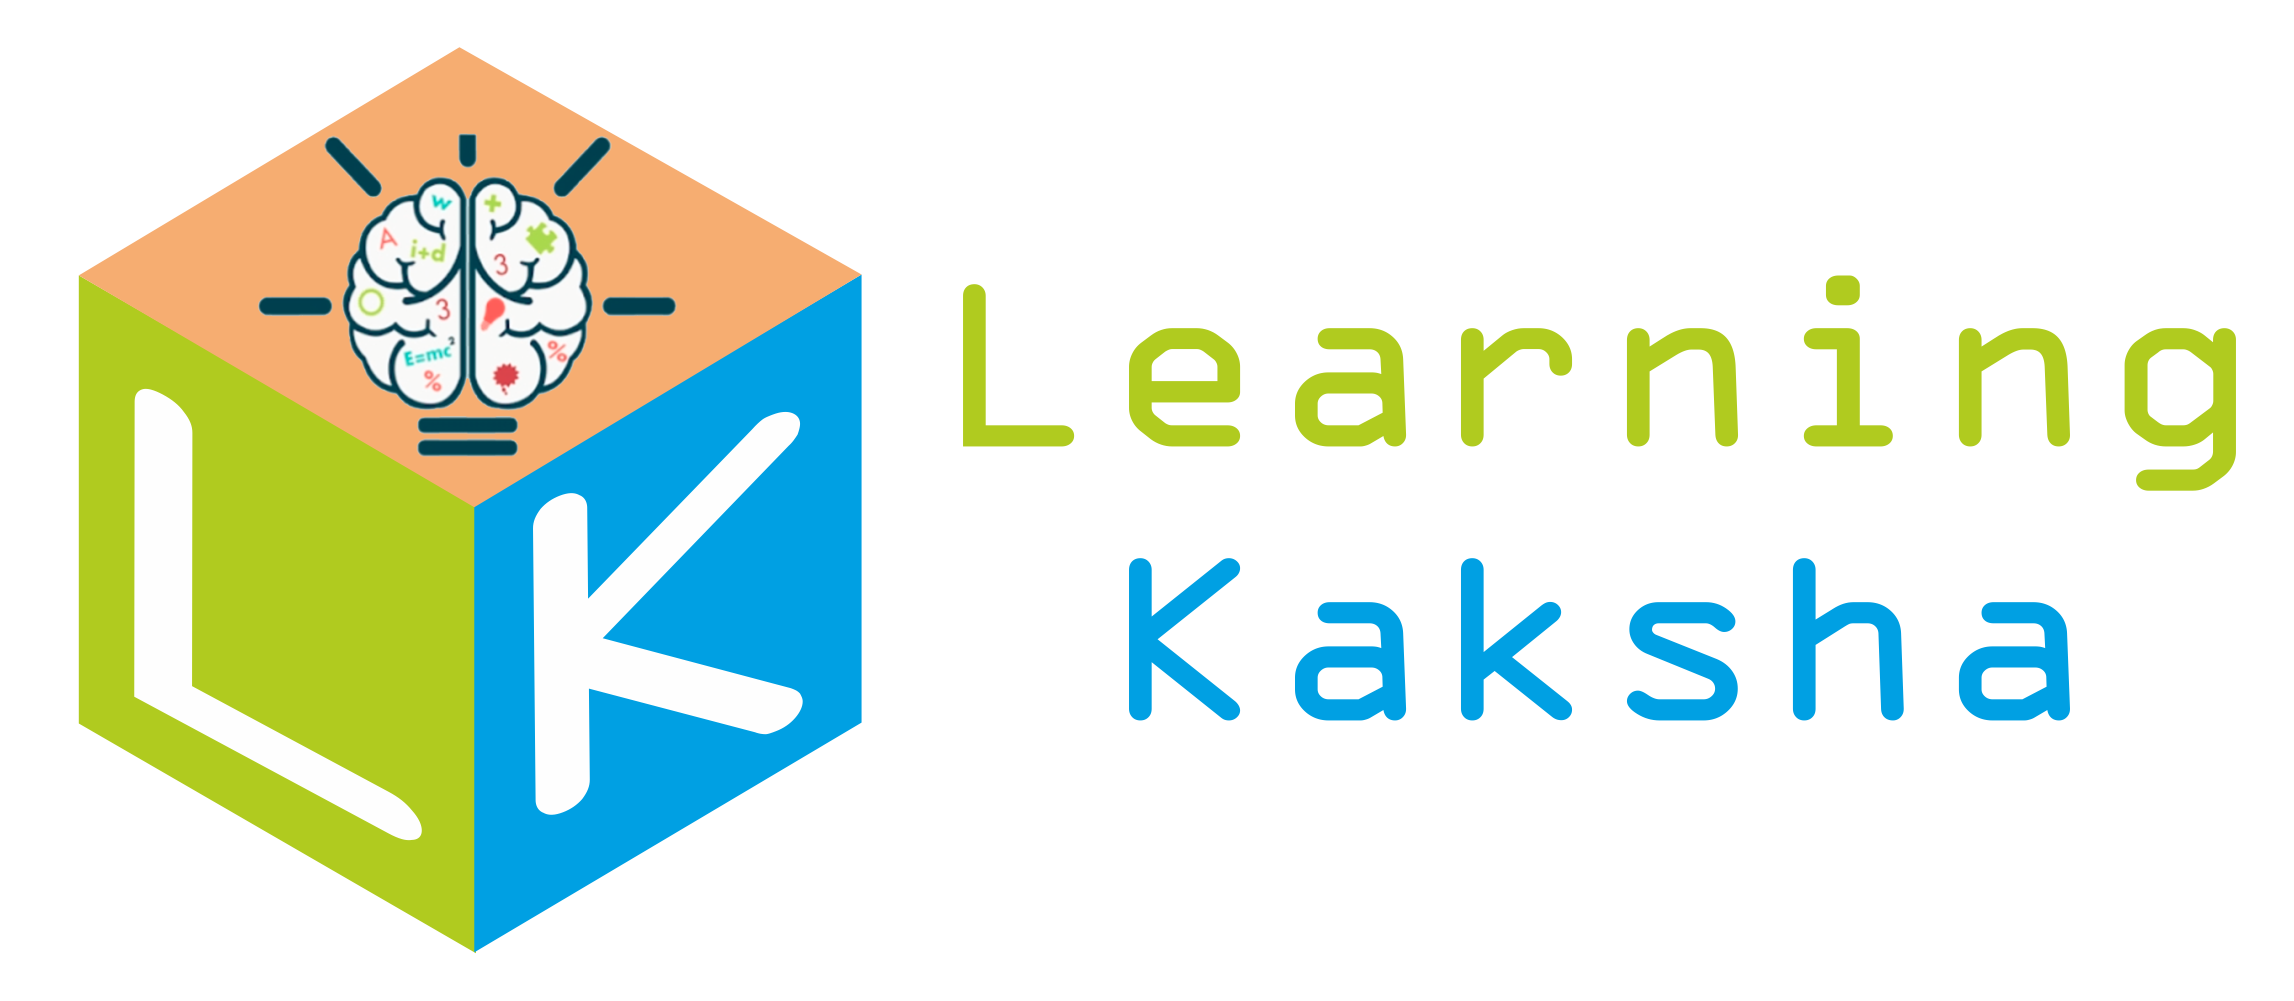 Learning Kaksha Logo